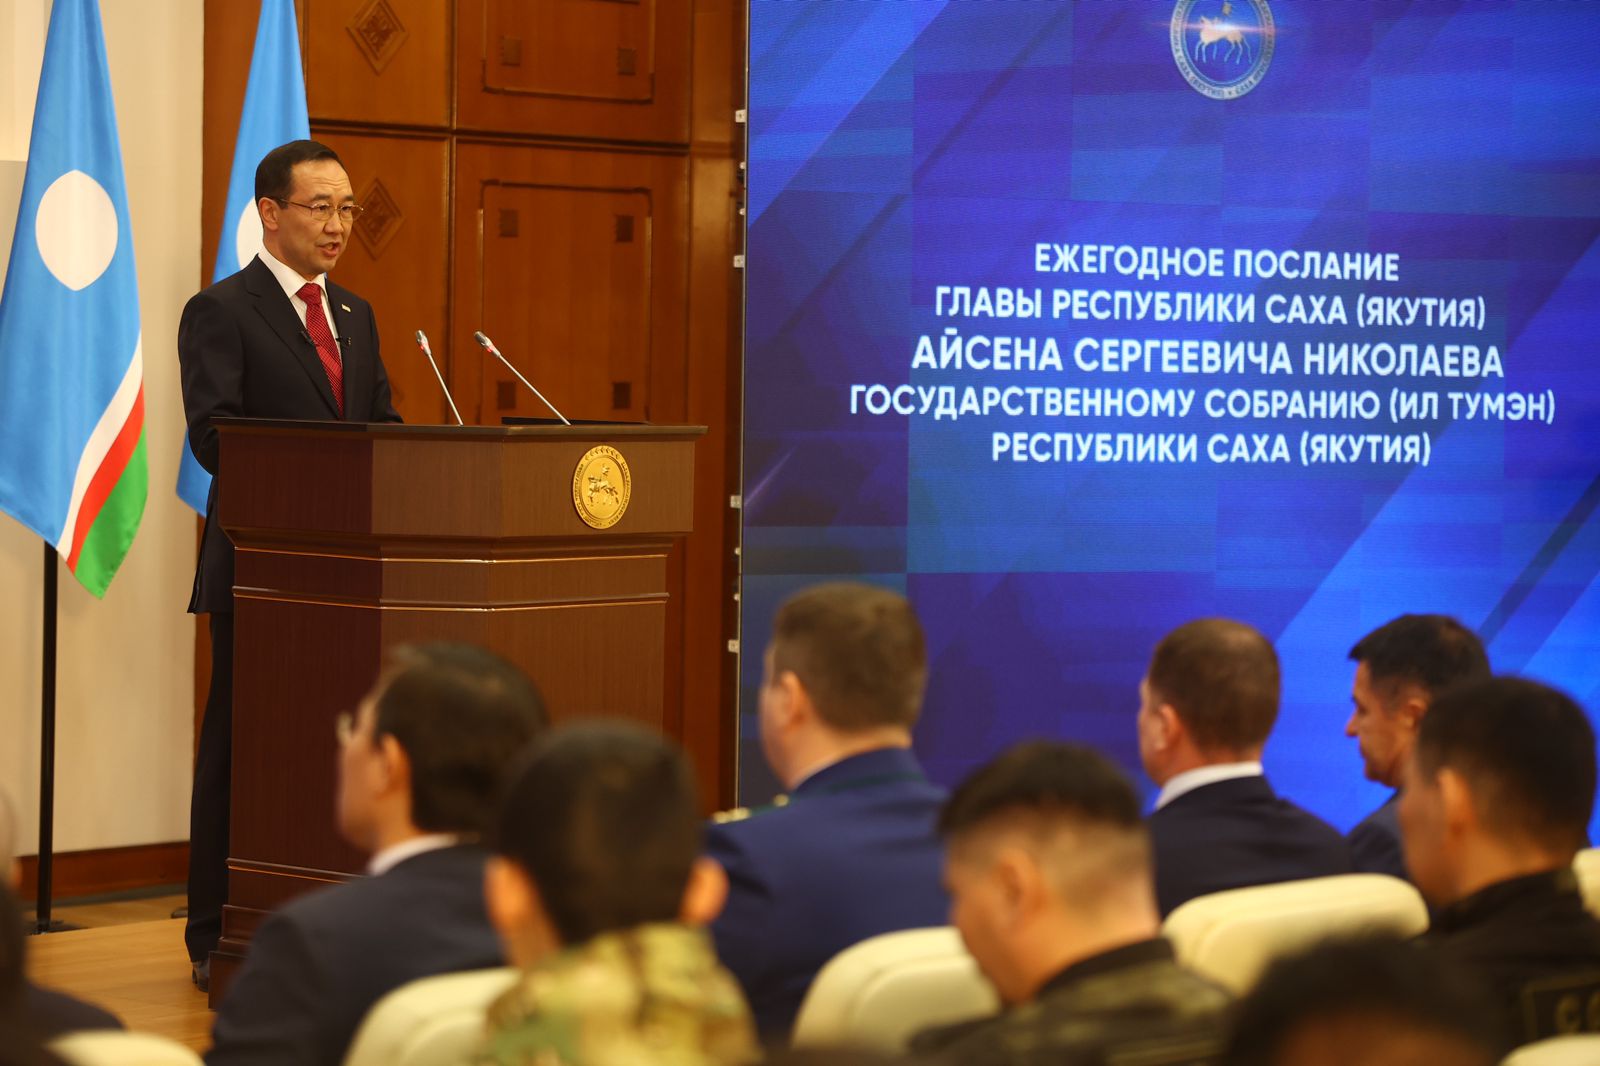 Глава Якутии огласит послание парламенту республики 22 декабря